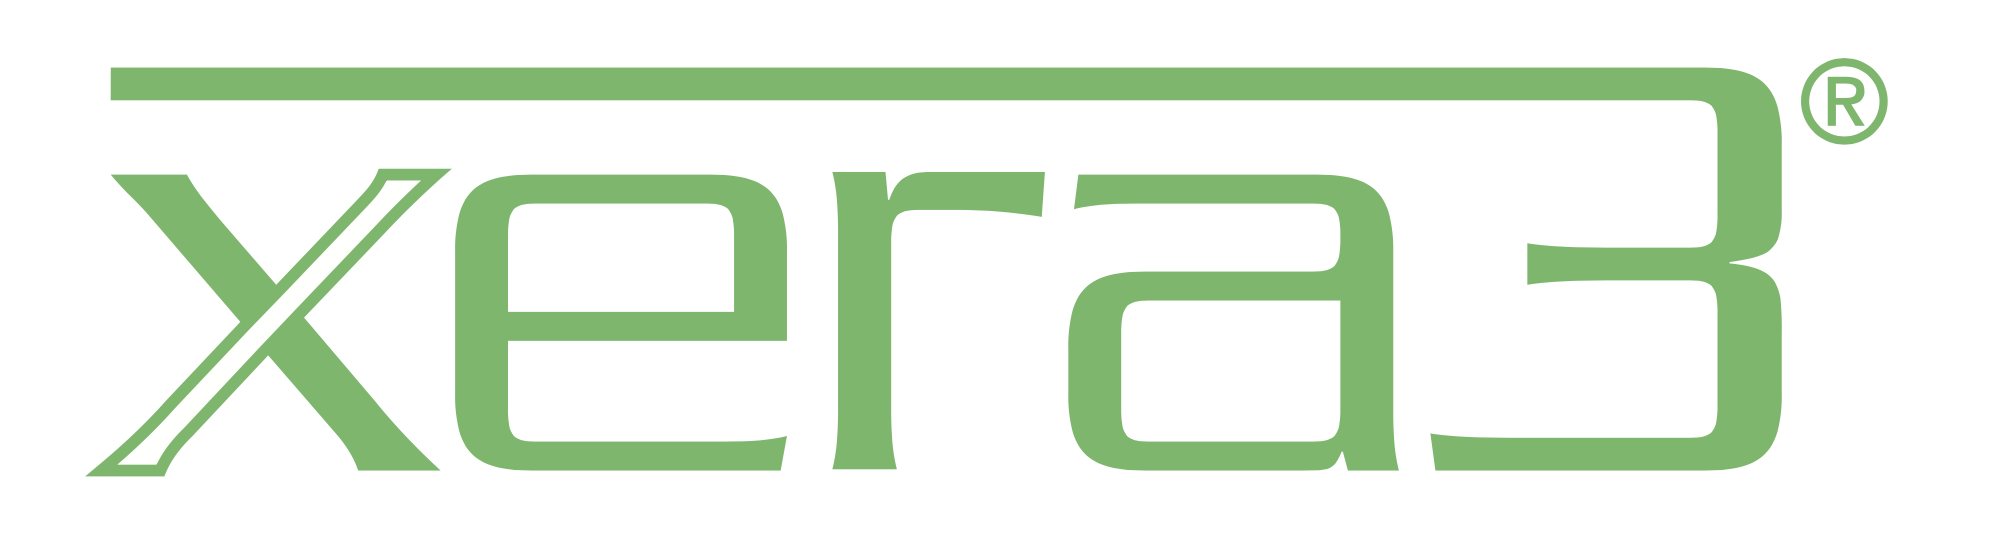 Xera3 Logo